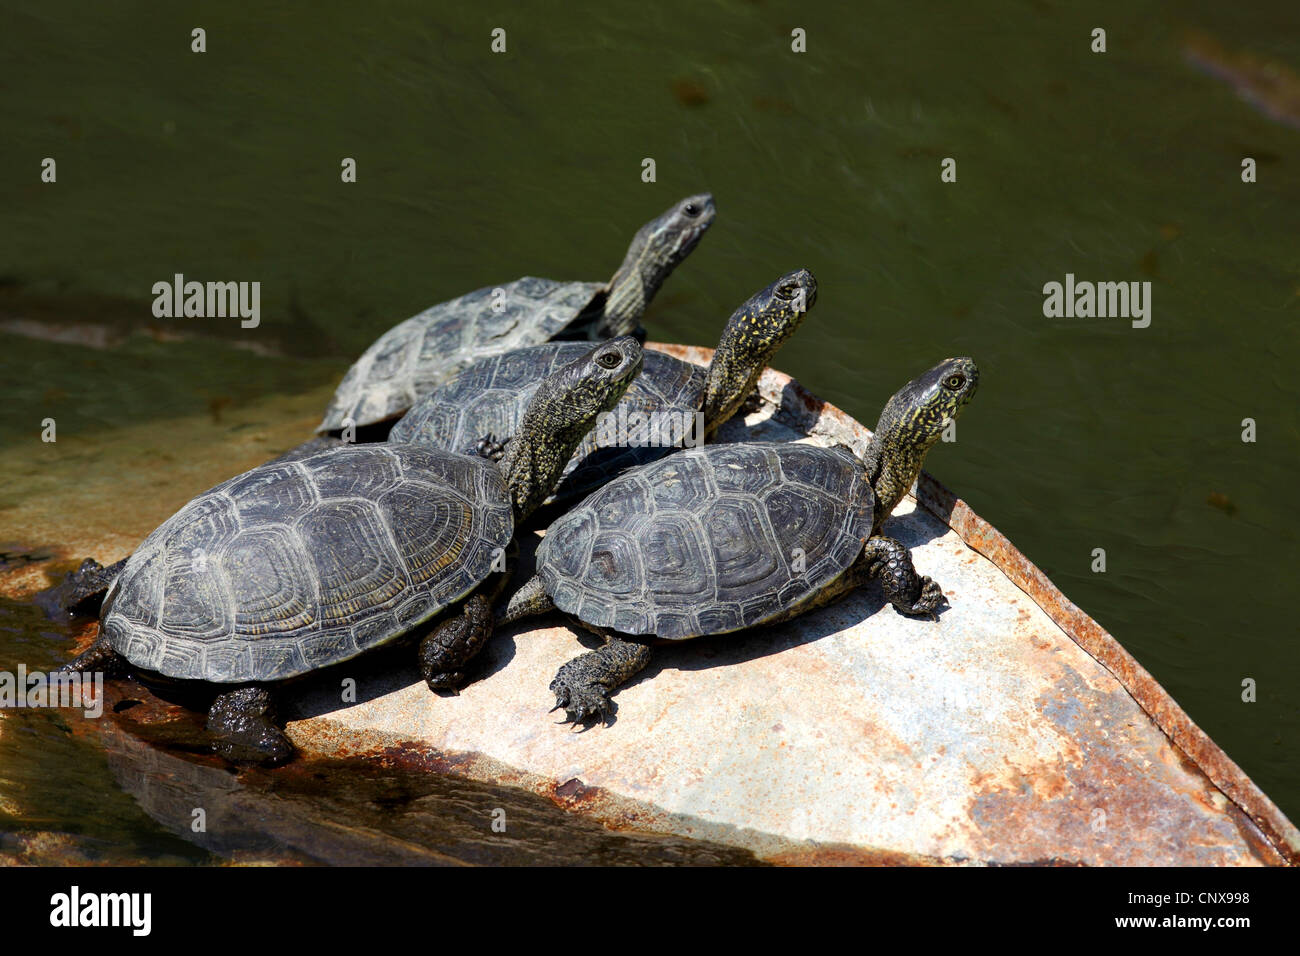 European pond terrapin, European pond turtle, European pond tortoise (Emys orbicularis), group on a waterfront, Greece, Lesbos Stock Photo